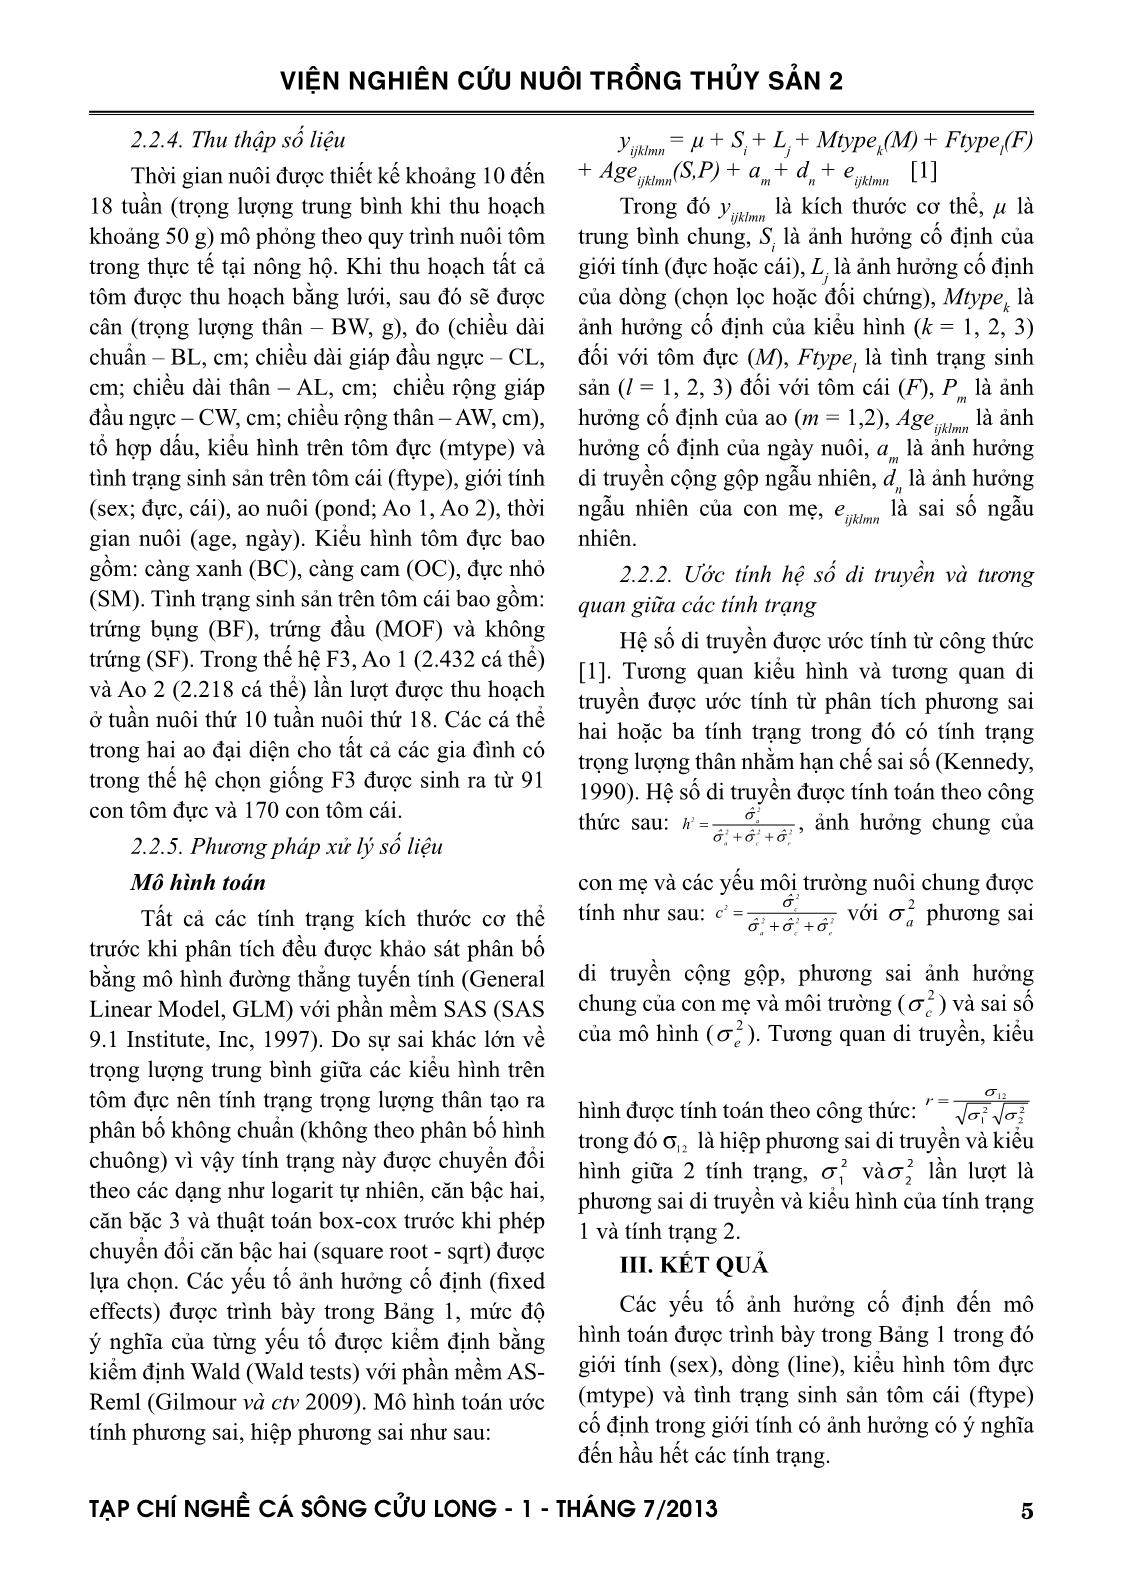 Tạp chí Nghề cá sông Cửu Long - Số 01/2013 trang 5